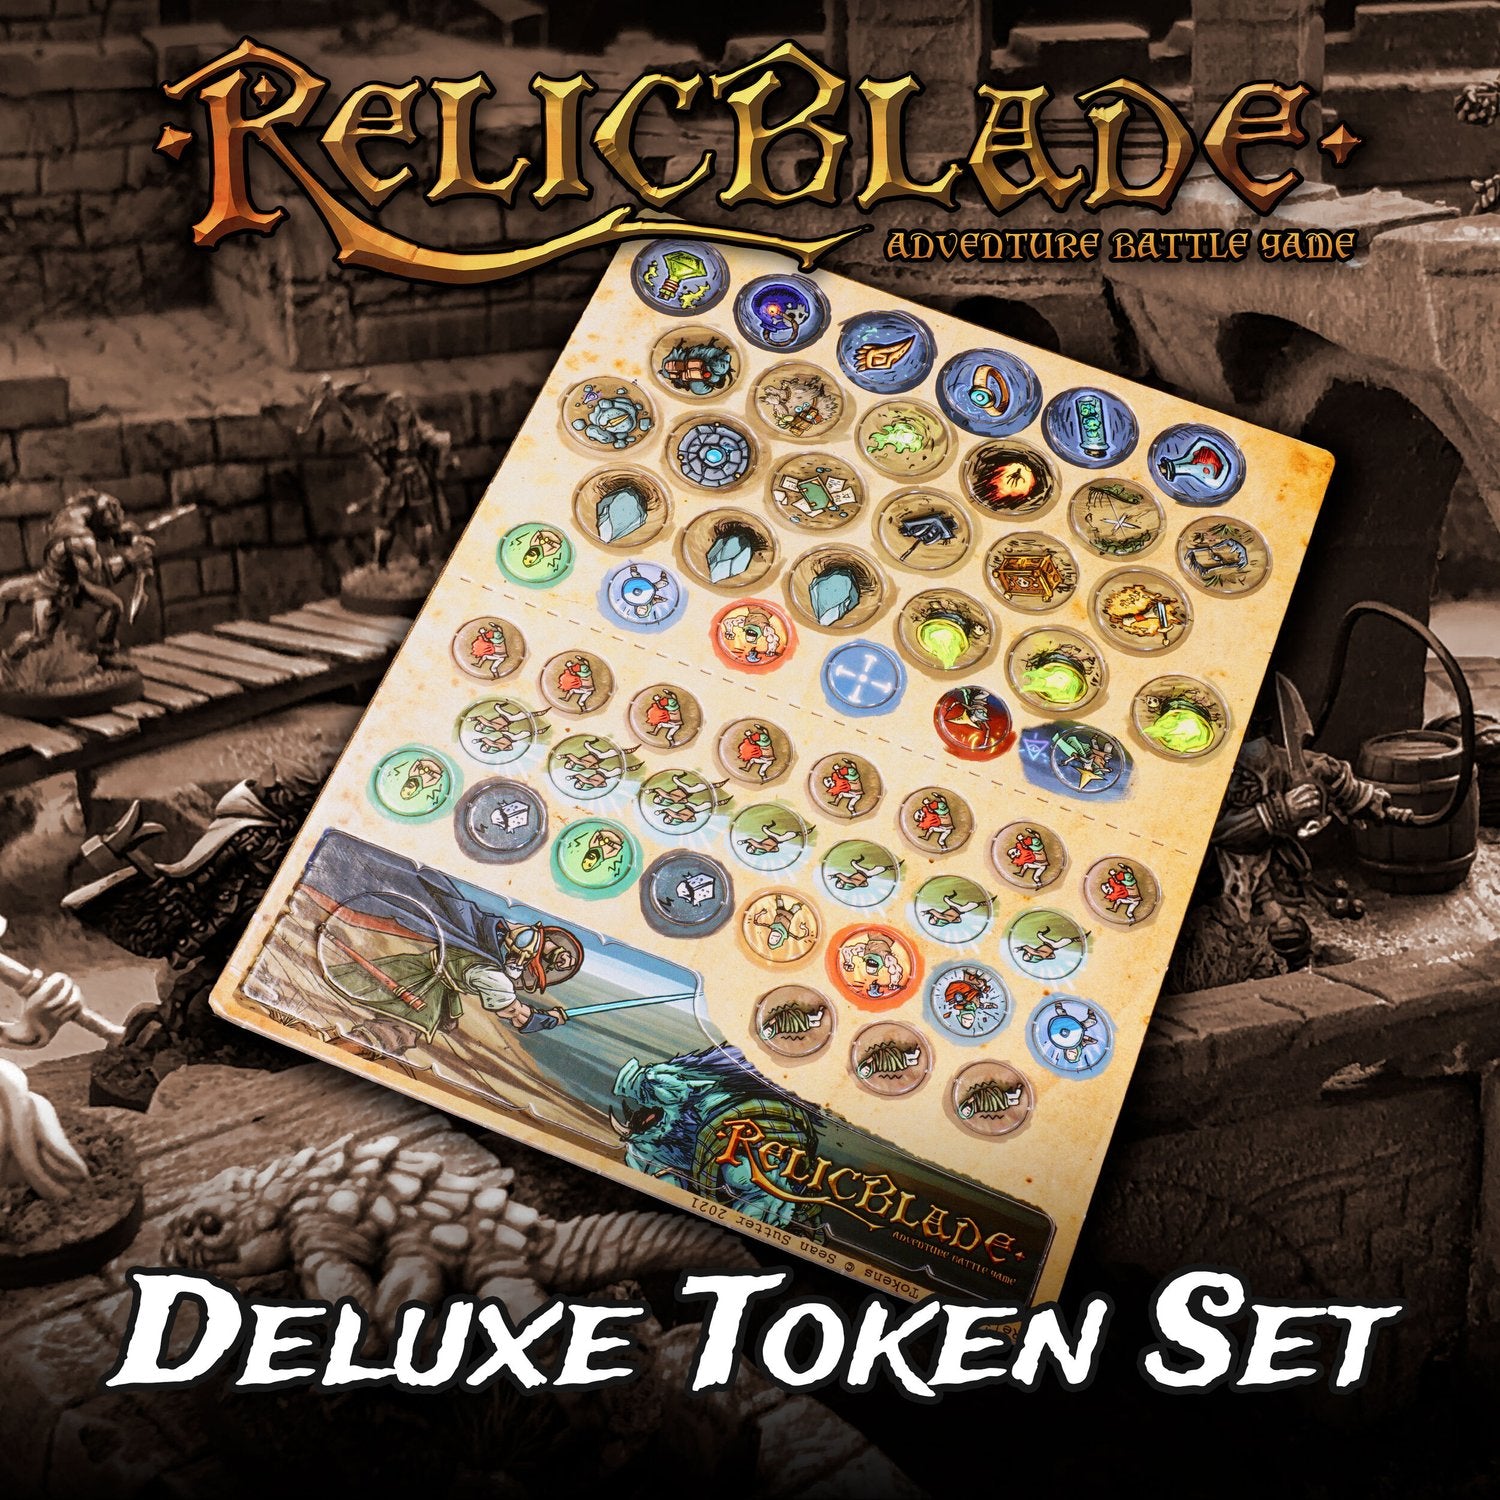 Deluxe Relicblade Token Set  Metal King Studio Exit 23 Games Deluxe Relicblade Token Set